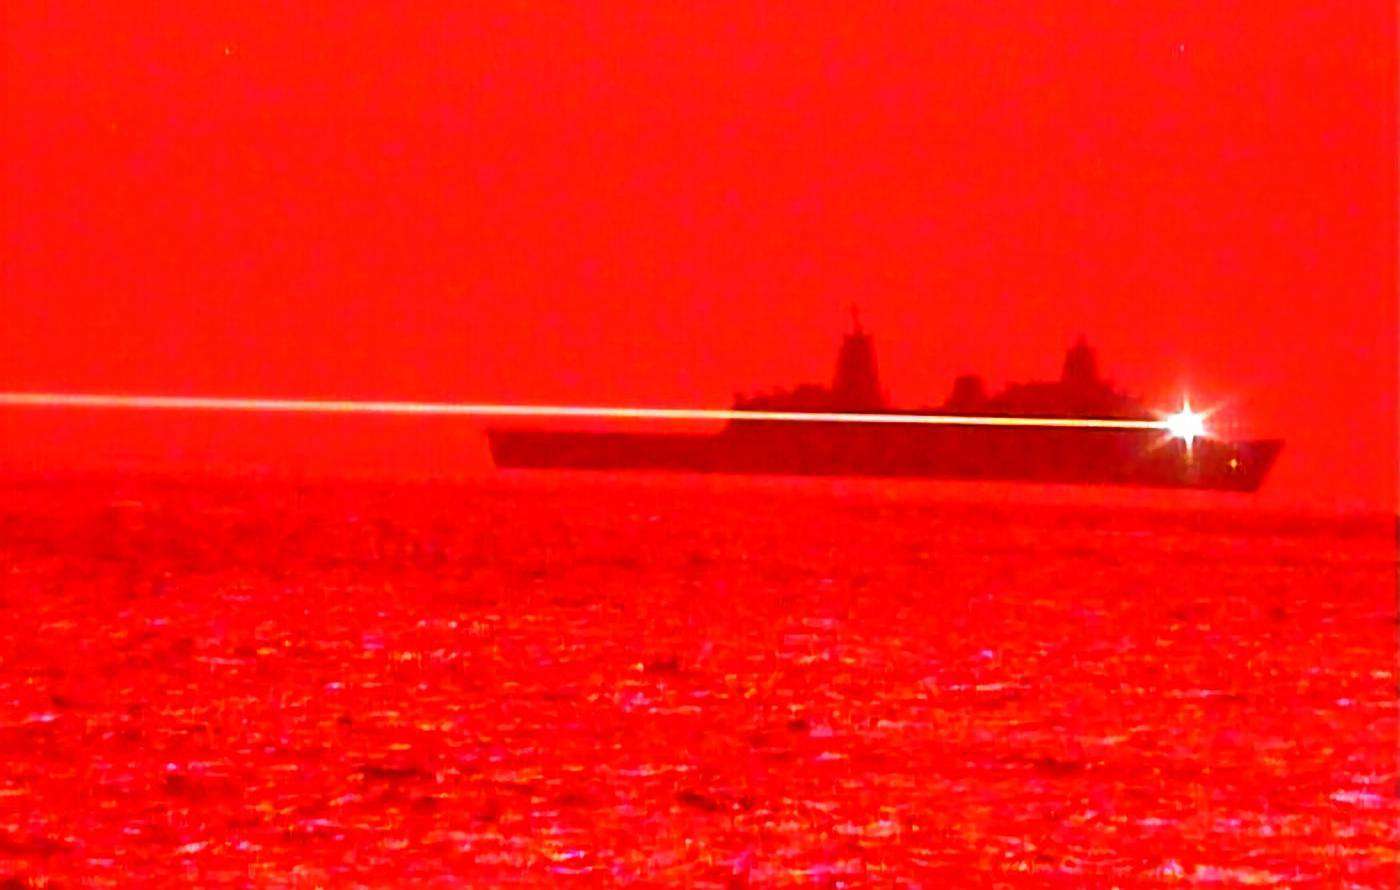 Taboola Ad Example 38931 - Marinha Dos EUA Testa Canhão Laser Montado Em Navio; Assista